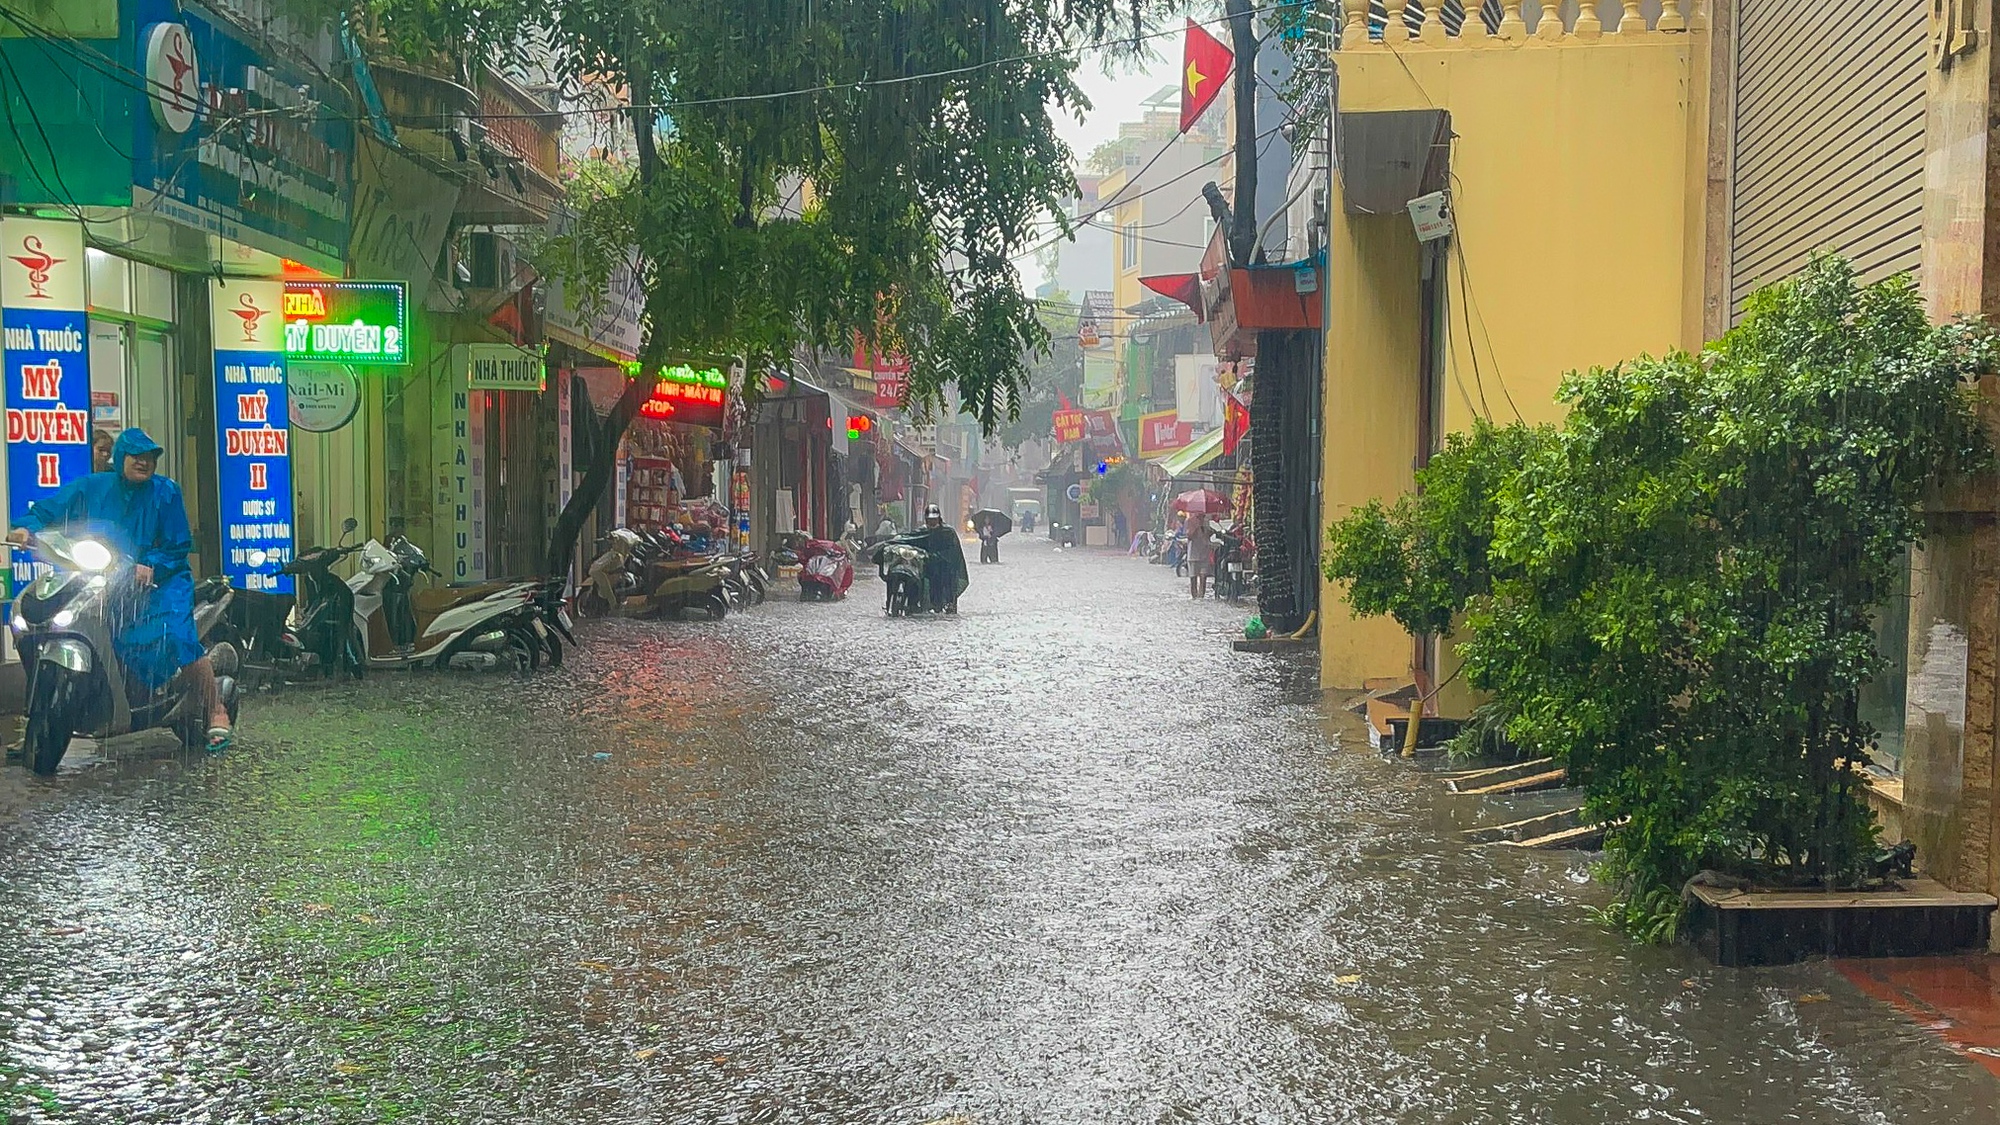 Hà Nội đón cơn mưa giải nhiệt bất chợt khiến nhiều tuyến phố ngập sâu - Ảnh 1.